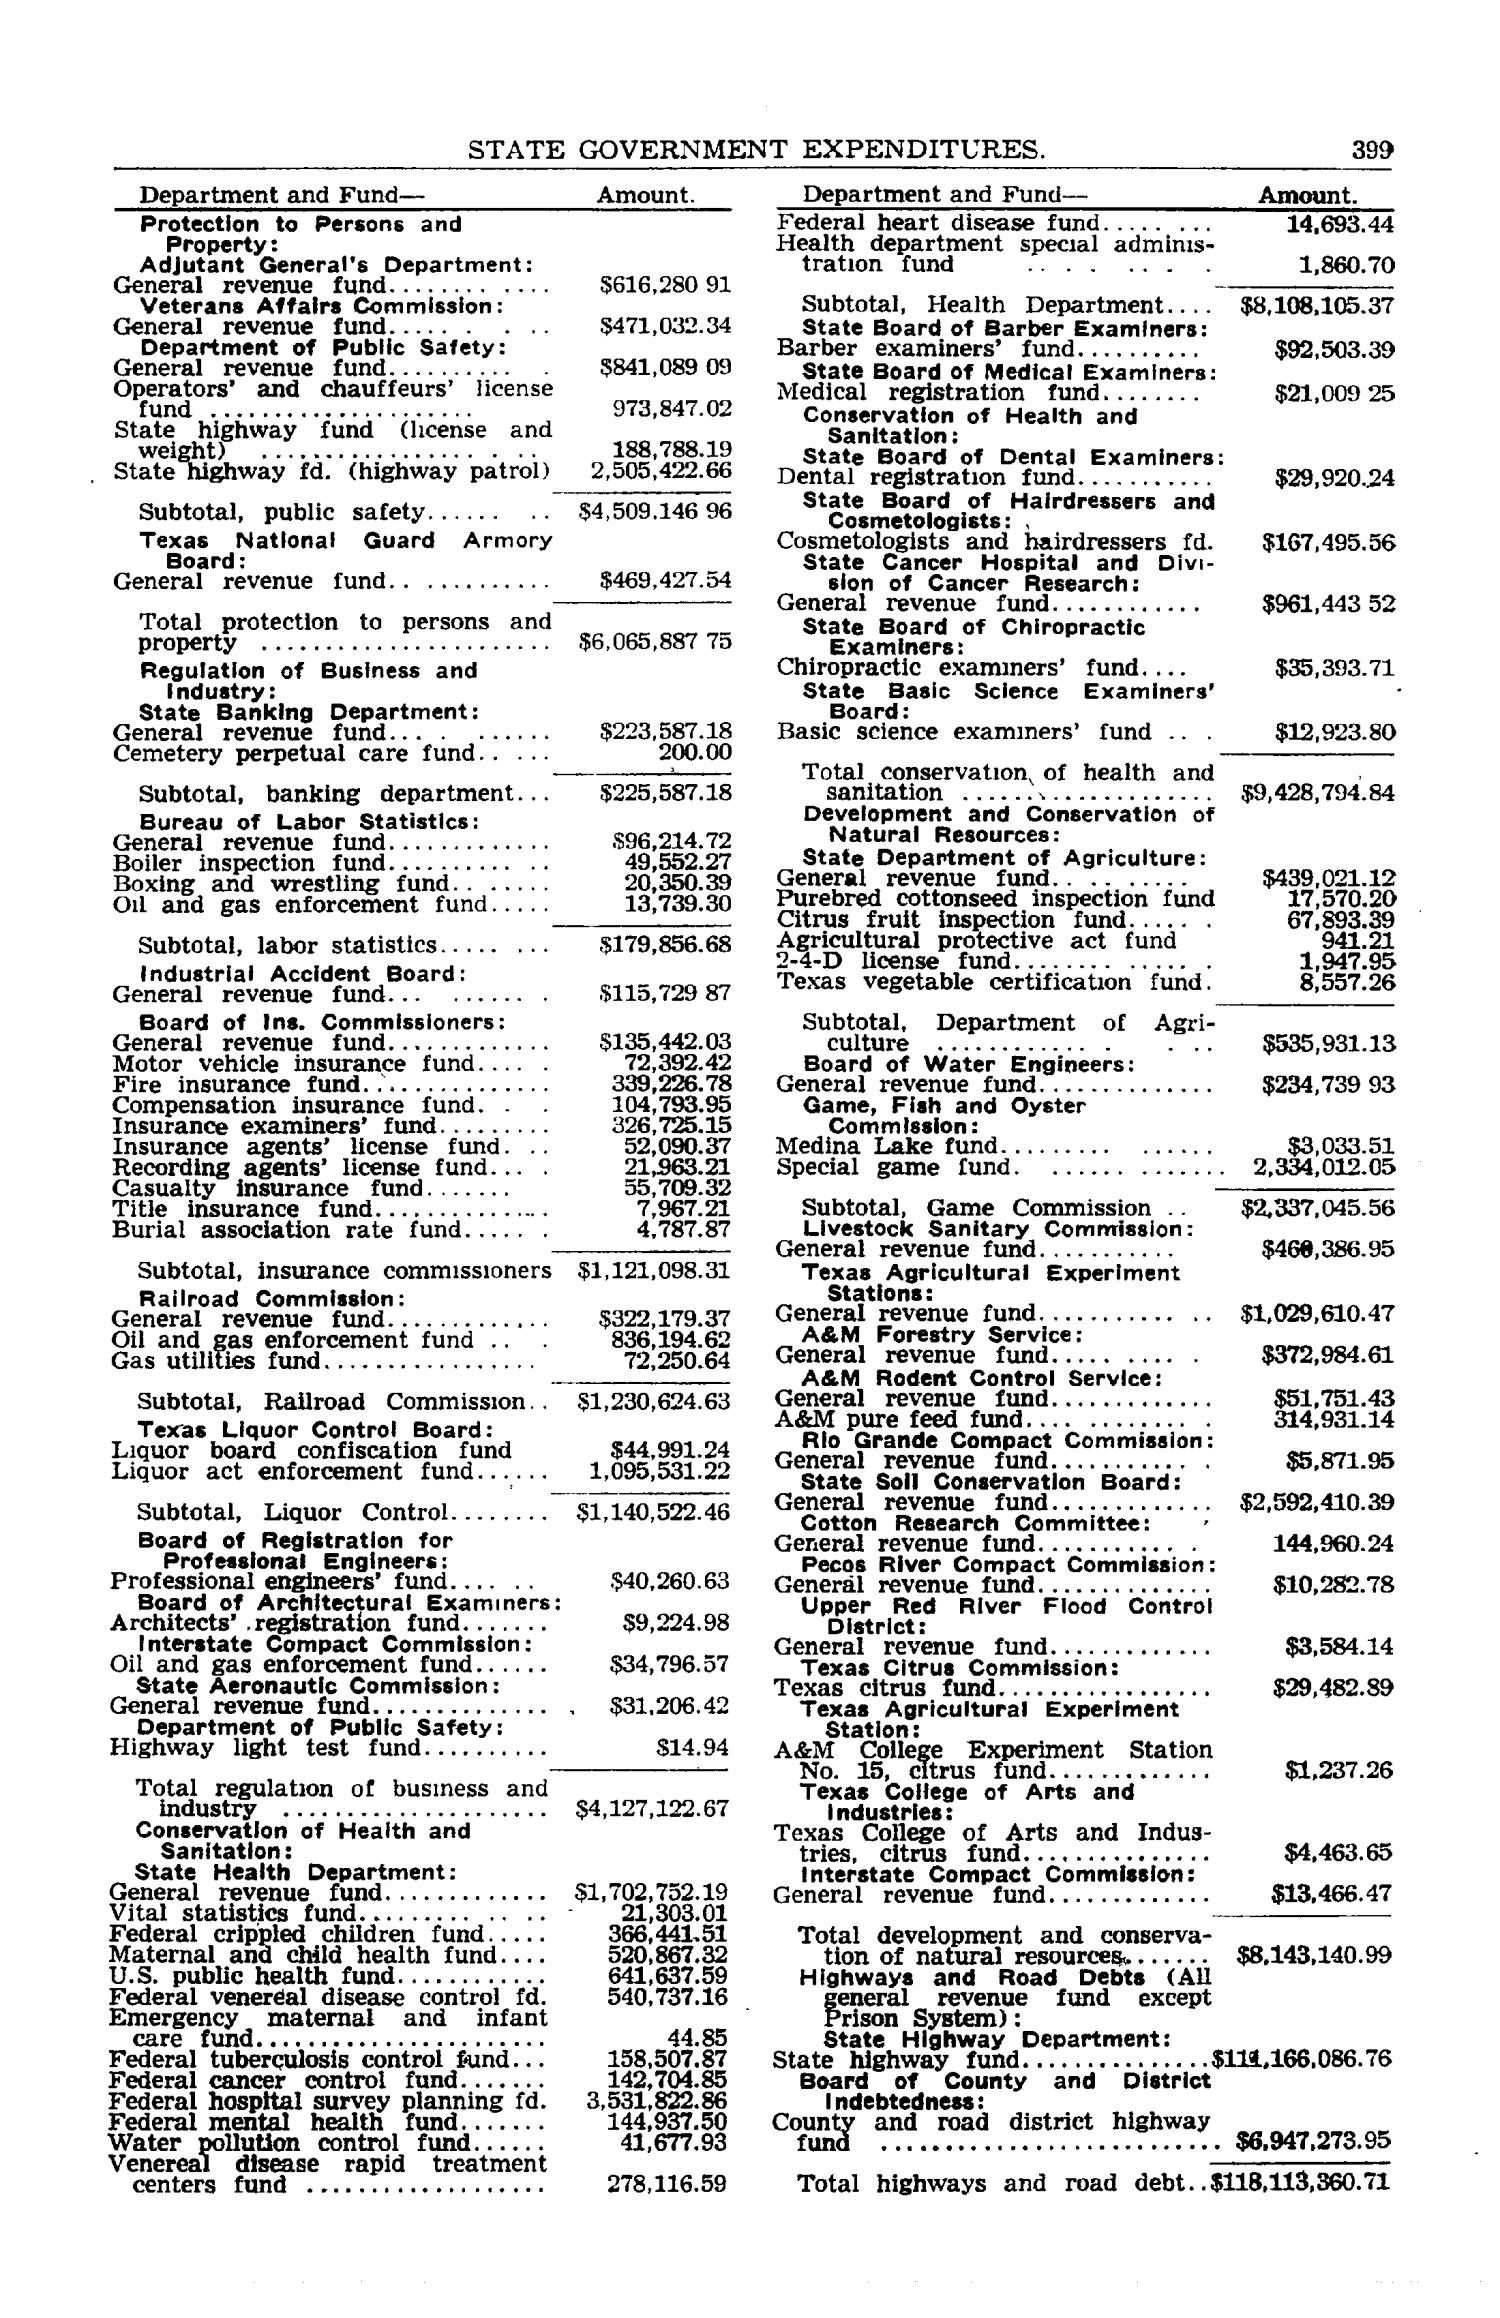 Texas Almanac, 1952-1953
                                                
                                                    399
                                                